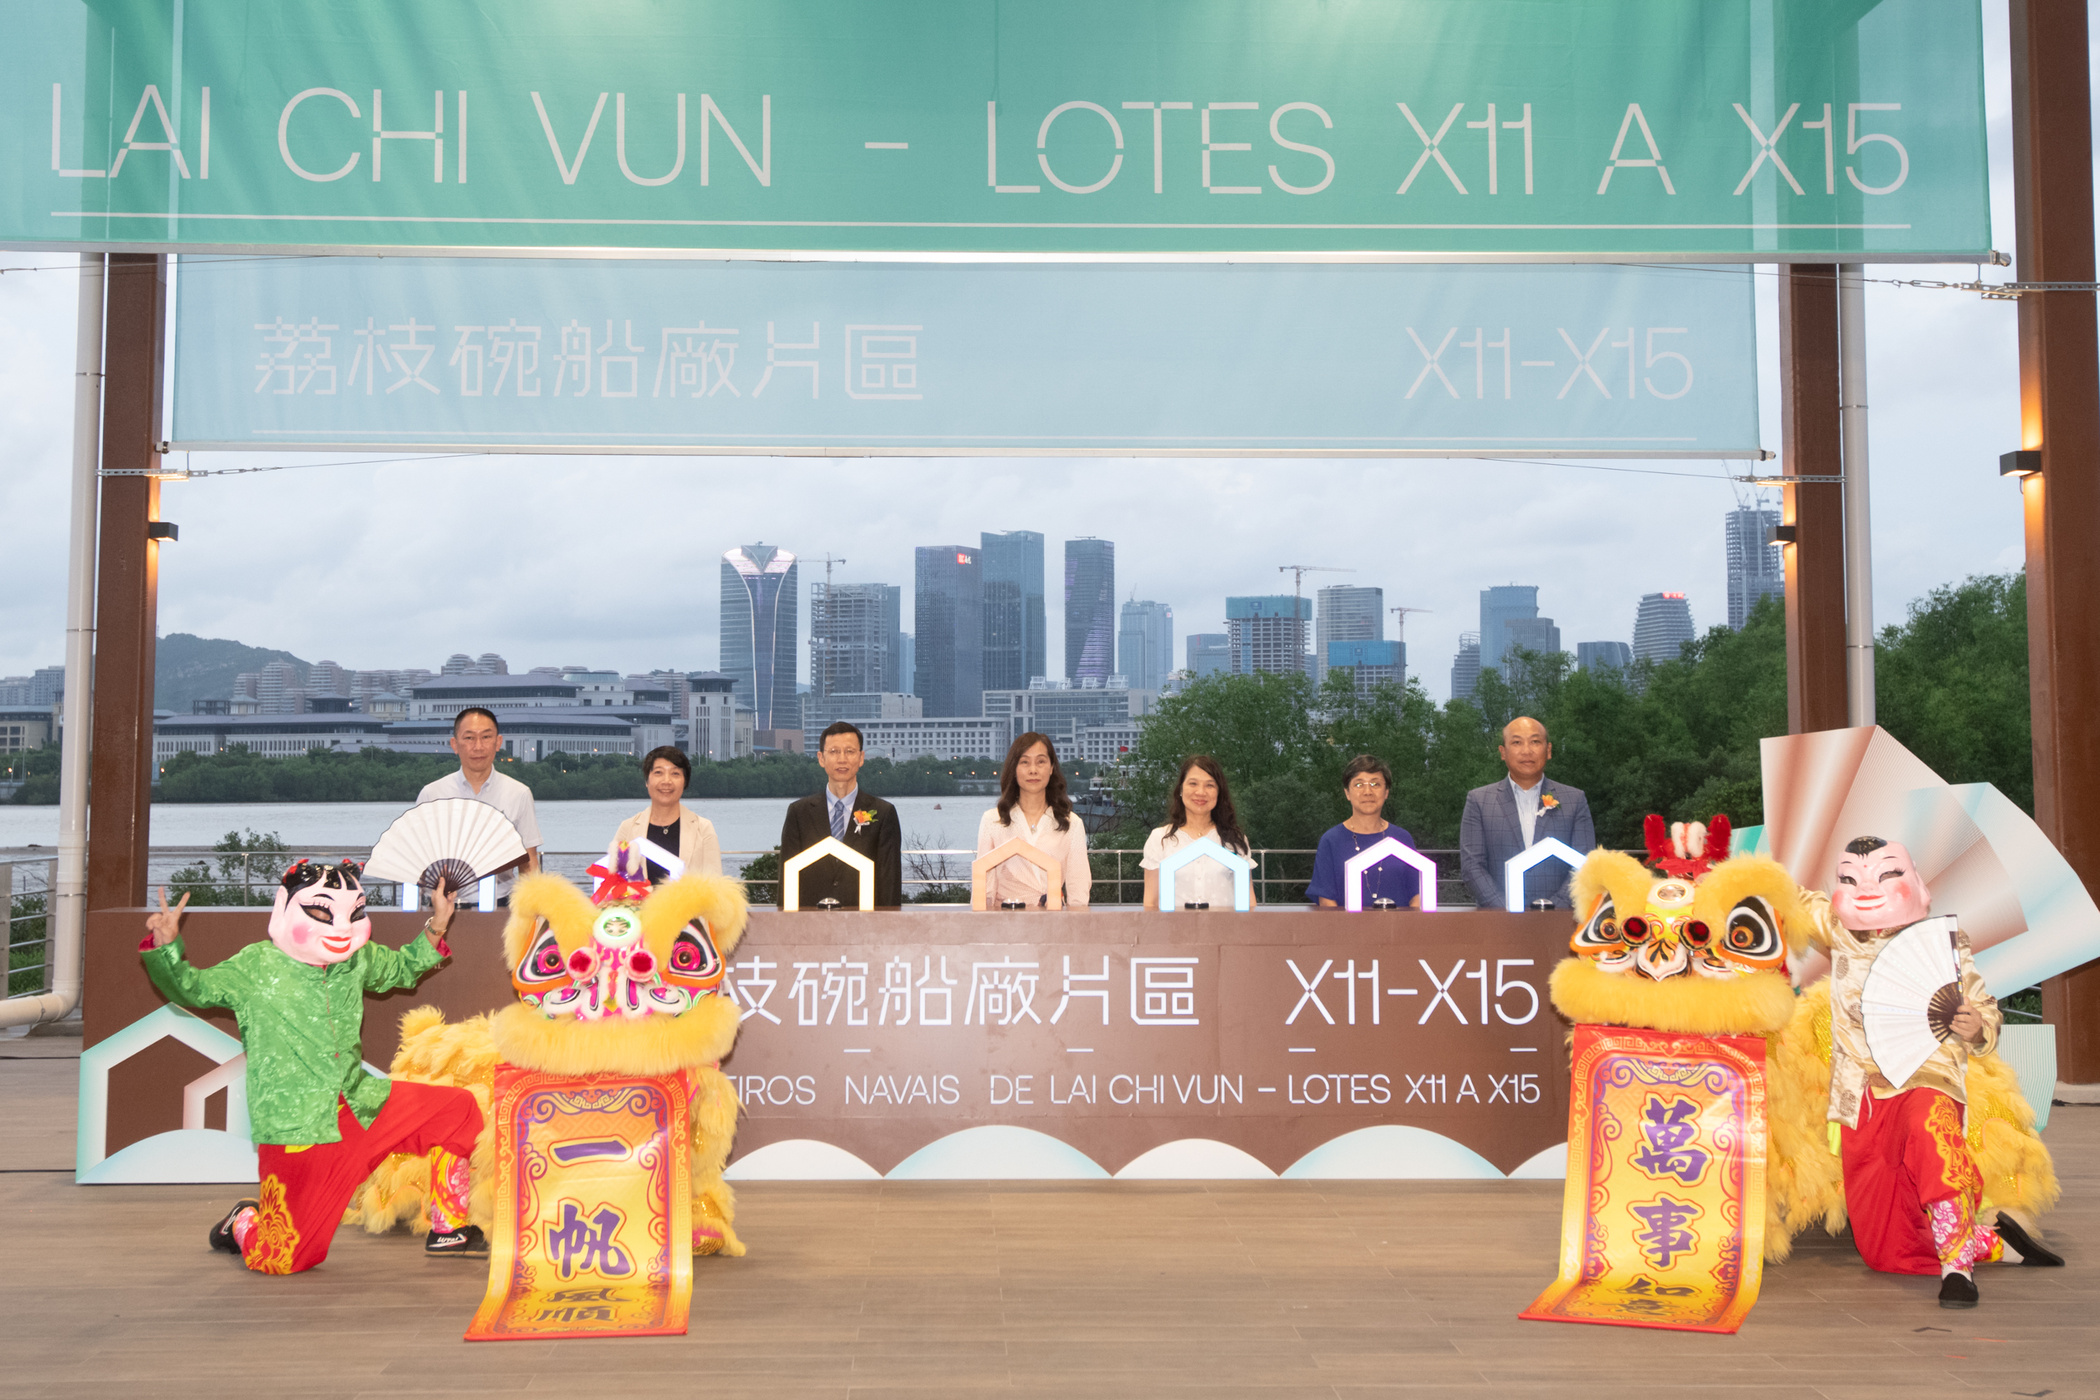 Exposições, feira e actuações ao vivo marcam inauguração dos estaleiros de Lai Chi Vun